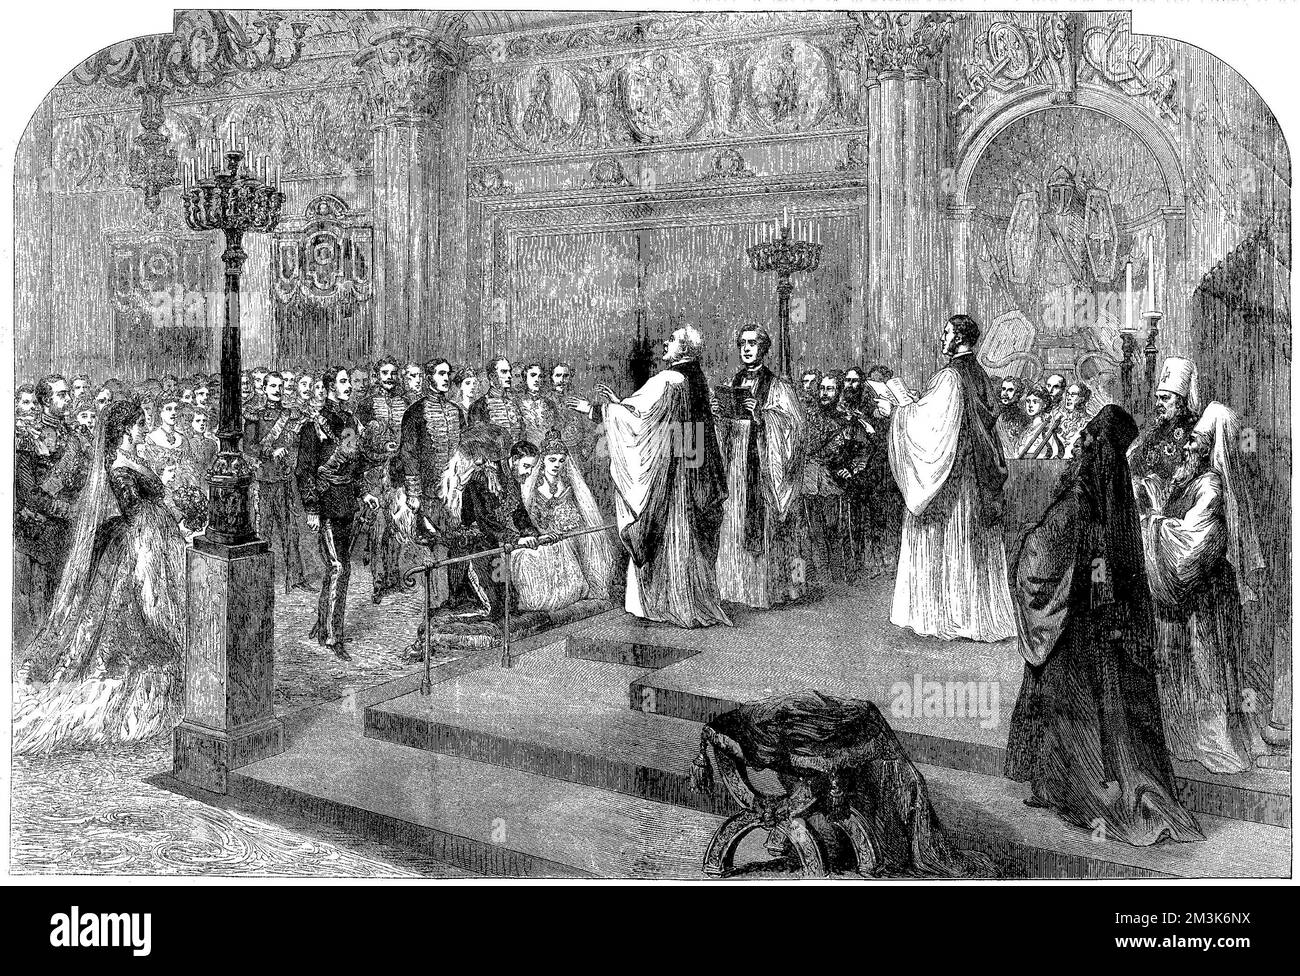 Le prince Alfred, duc d'Édimbourg et sa mariée russe, la Grande duchesse Marie Alexandrovna, s'agenouillent à l'autel lors de la cérémonie de mariage anglaise dans le palais Alexandre du Palais d'hiver sur 23 janvier 1874, sous la direction du Dr Stanley, doyen de Westminster. La reine Victoria, qui hésitait à accepter le match, n'a pas assisté au mariage à St. Petersbourg mais Edward, Prince de Galles et Prince Arthur de Connaught étaient présents. Le même jour, une cérémonie orthodoxe grecque a également eu lieu dans la chapelle impériale du palais. 23 janvier 1874 Banque D'Images